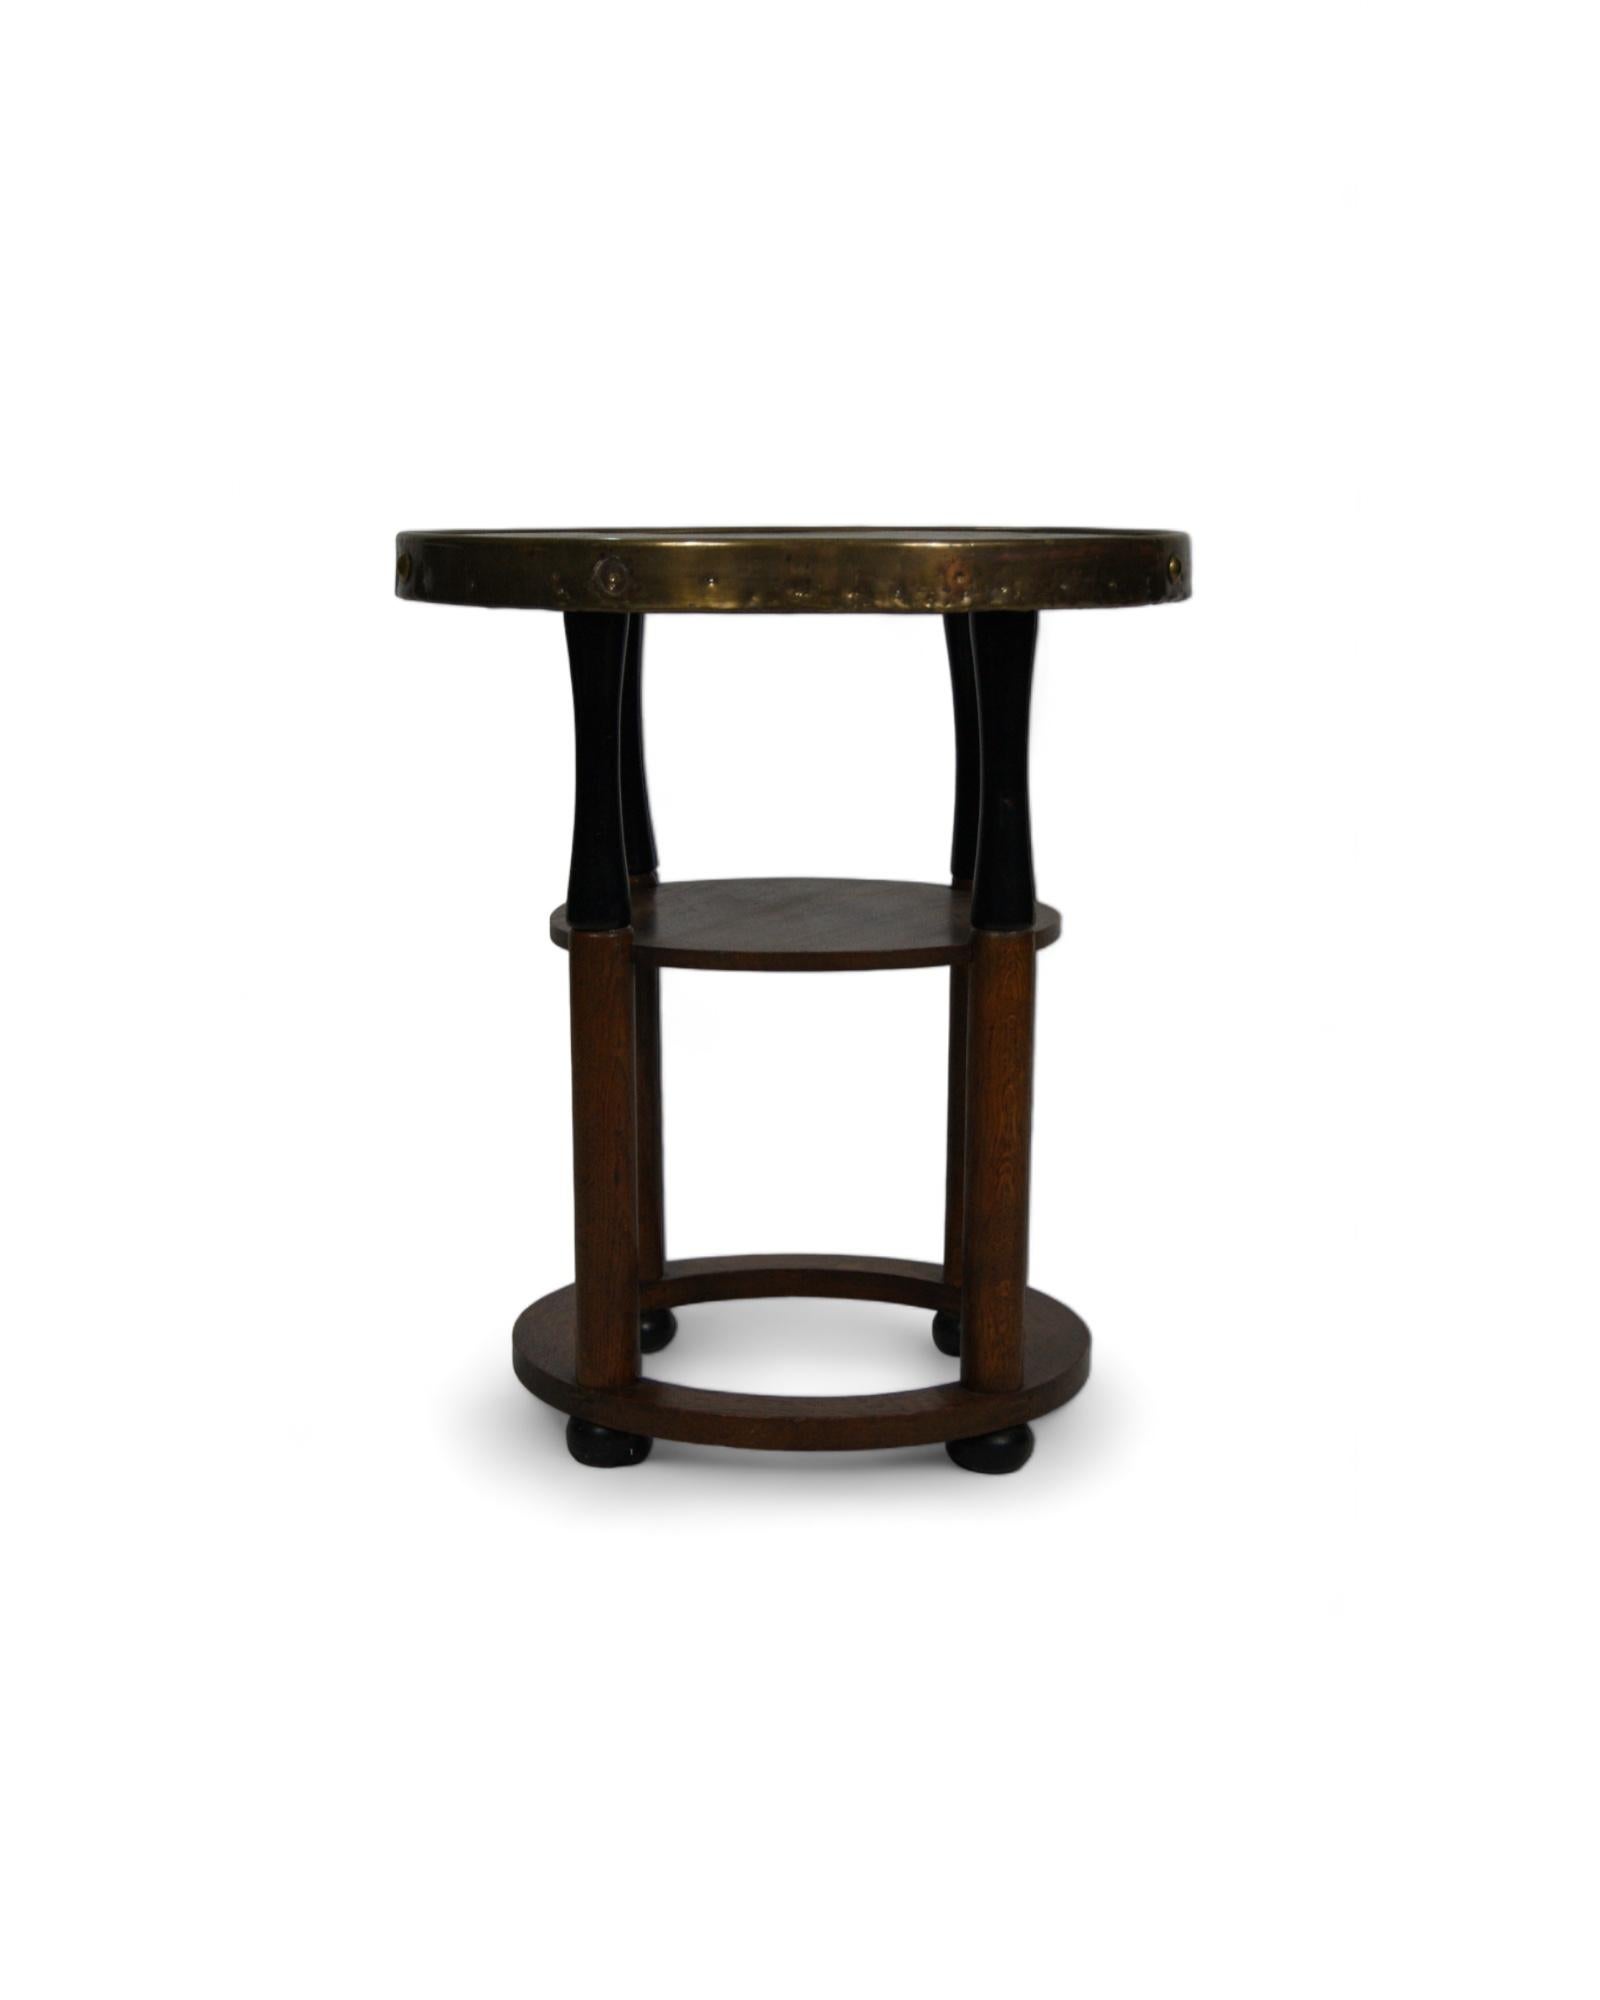 Un joyau intemporel : une table d'appoint vintage Art of Vintage, évoquant l'élégance et le charme du début du XXe siècle. Avec sa structure en bois dur méticuleusement sculptée, cette table respire la sophistication d'une époque révolue, où